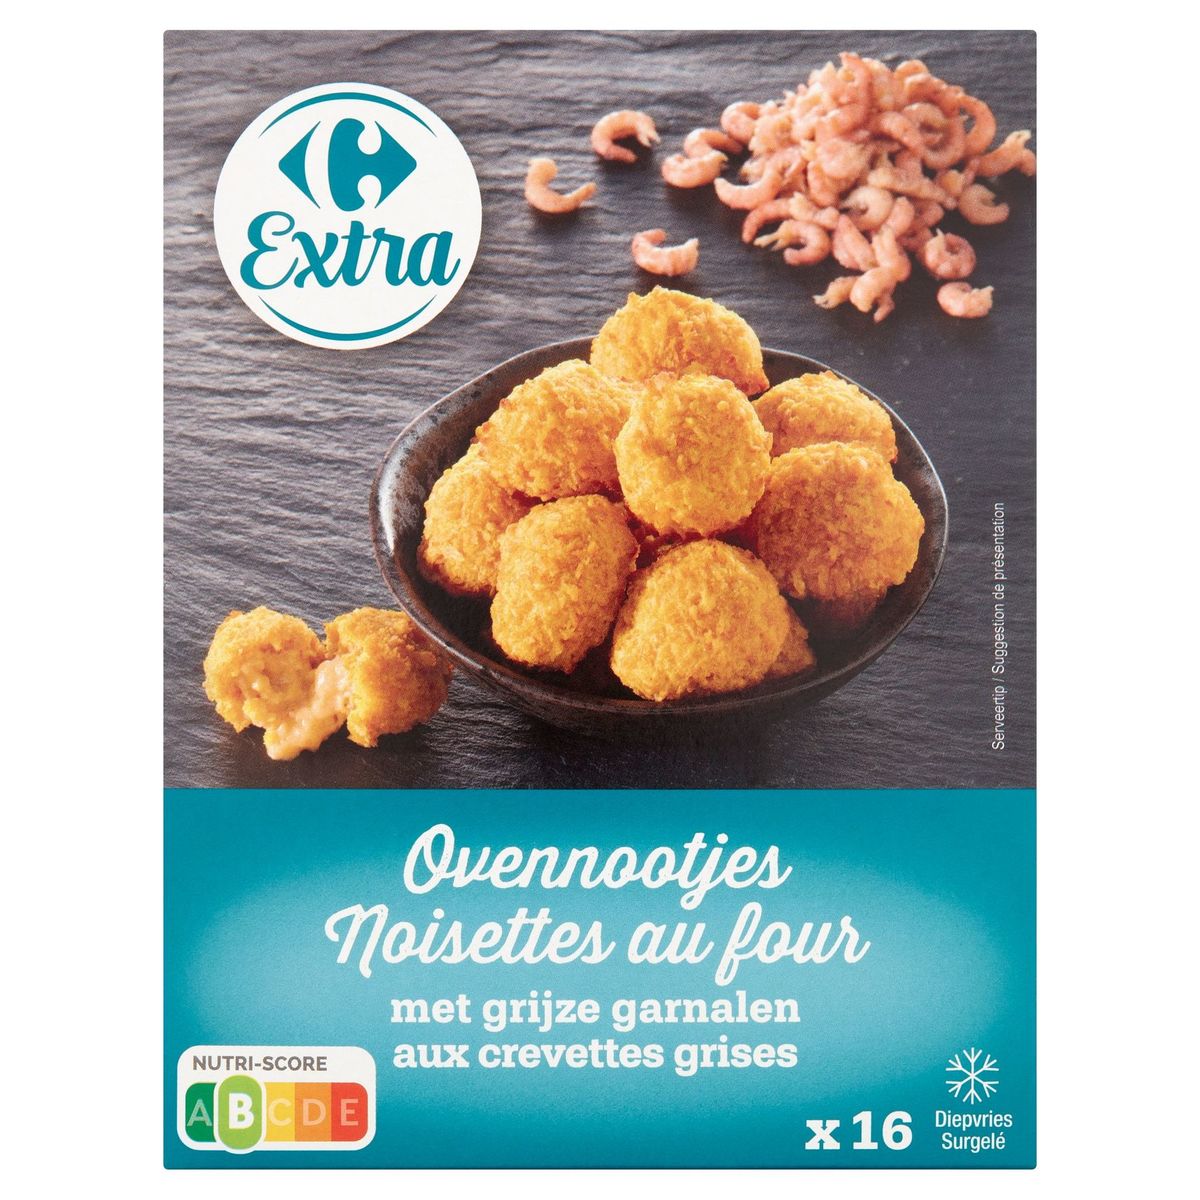 Carrefour Extra Noisettes au Four aux Crevettes Grises 16 x 16 g